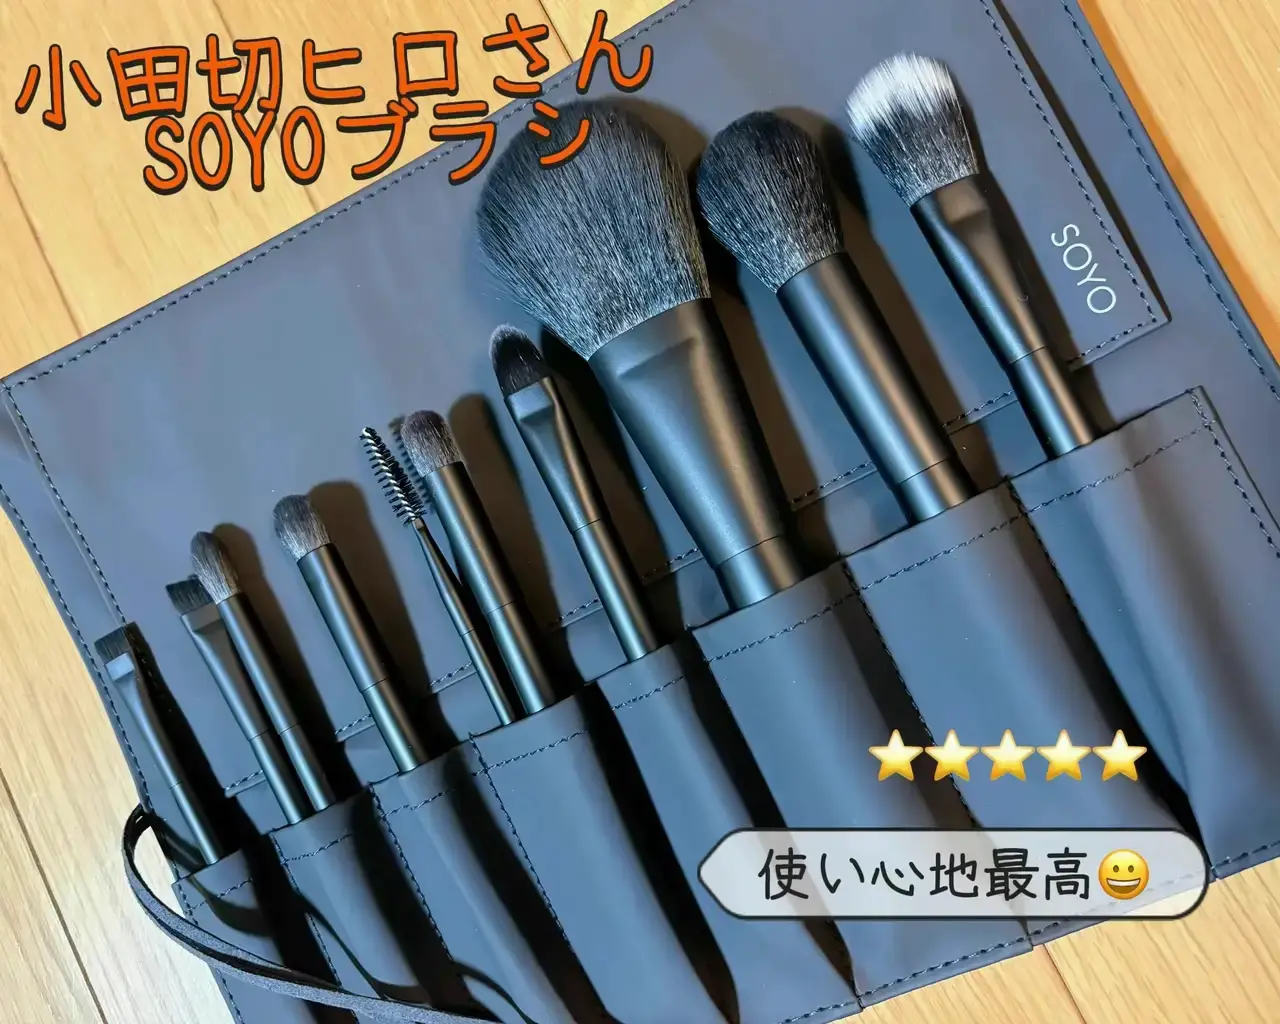 大特価特価メイクブラシ 小田切ヒロさん SOYOブラシ 5本 新品未使用 メイク道具・化粧小物